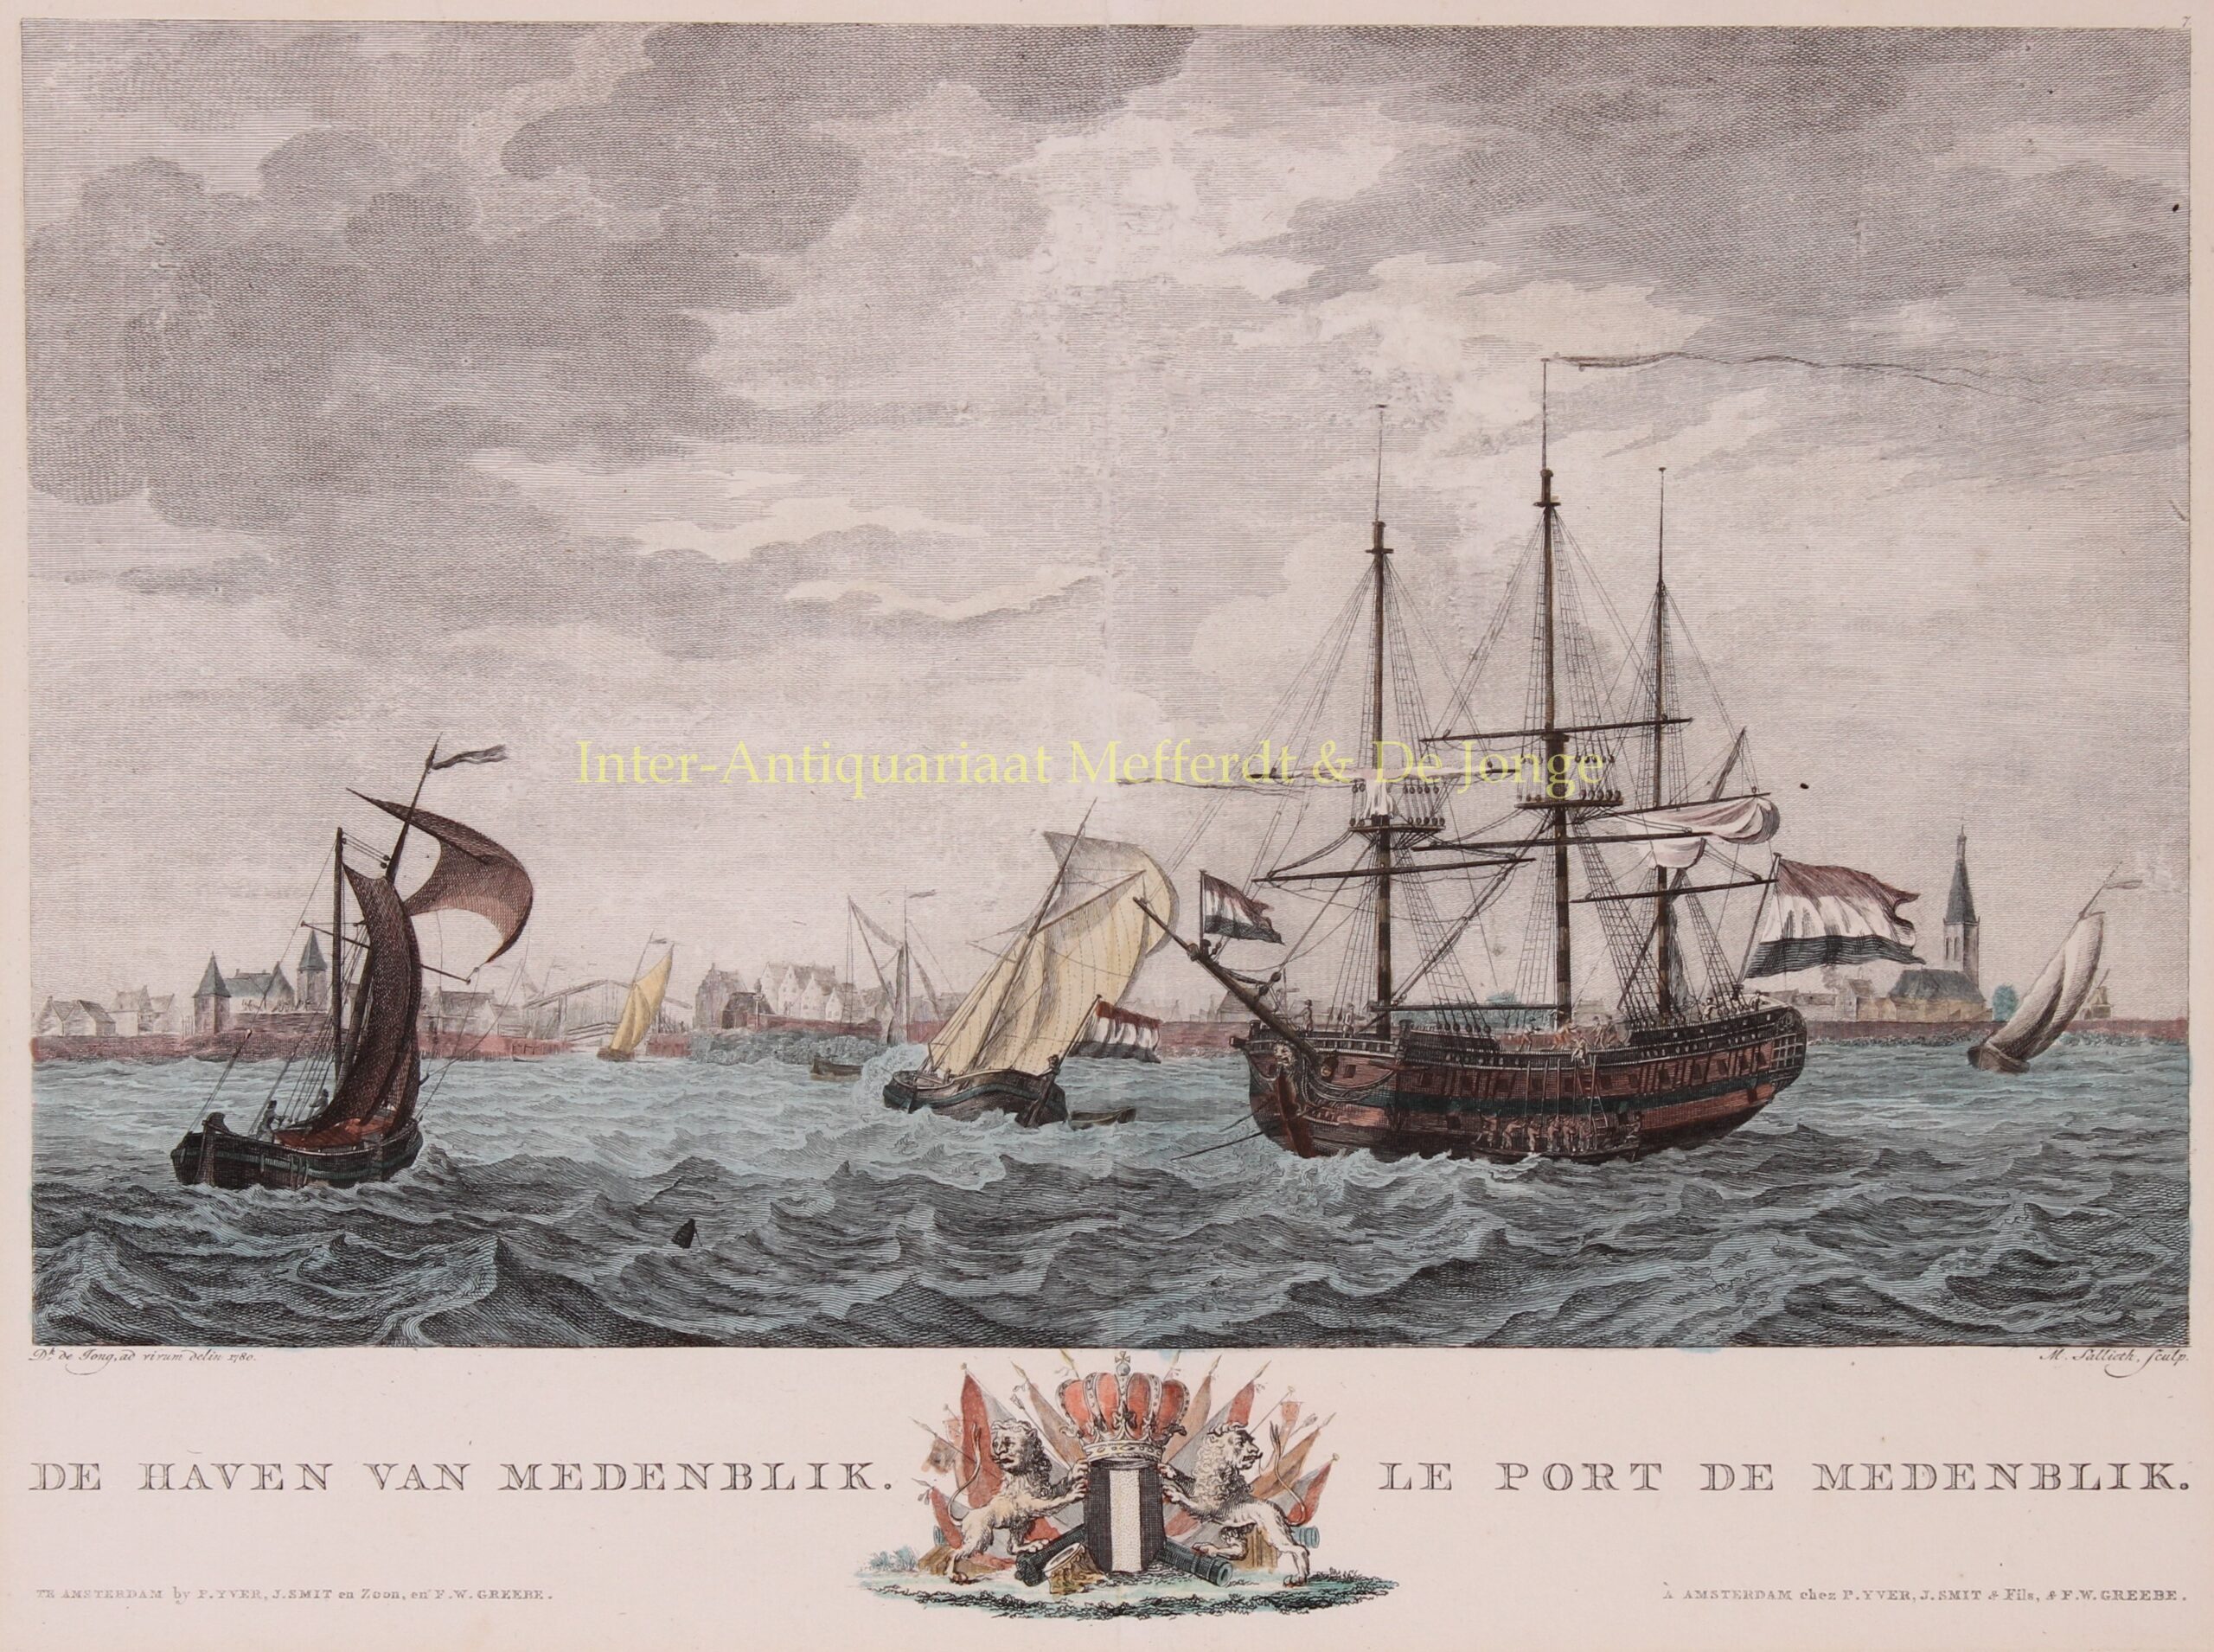 Jong-- Dirk de (active 1799-1805) - Medemblik - Matthias de Sallieth after Dirk de Jong,1802